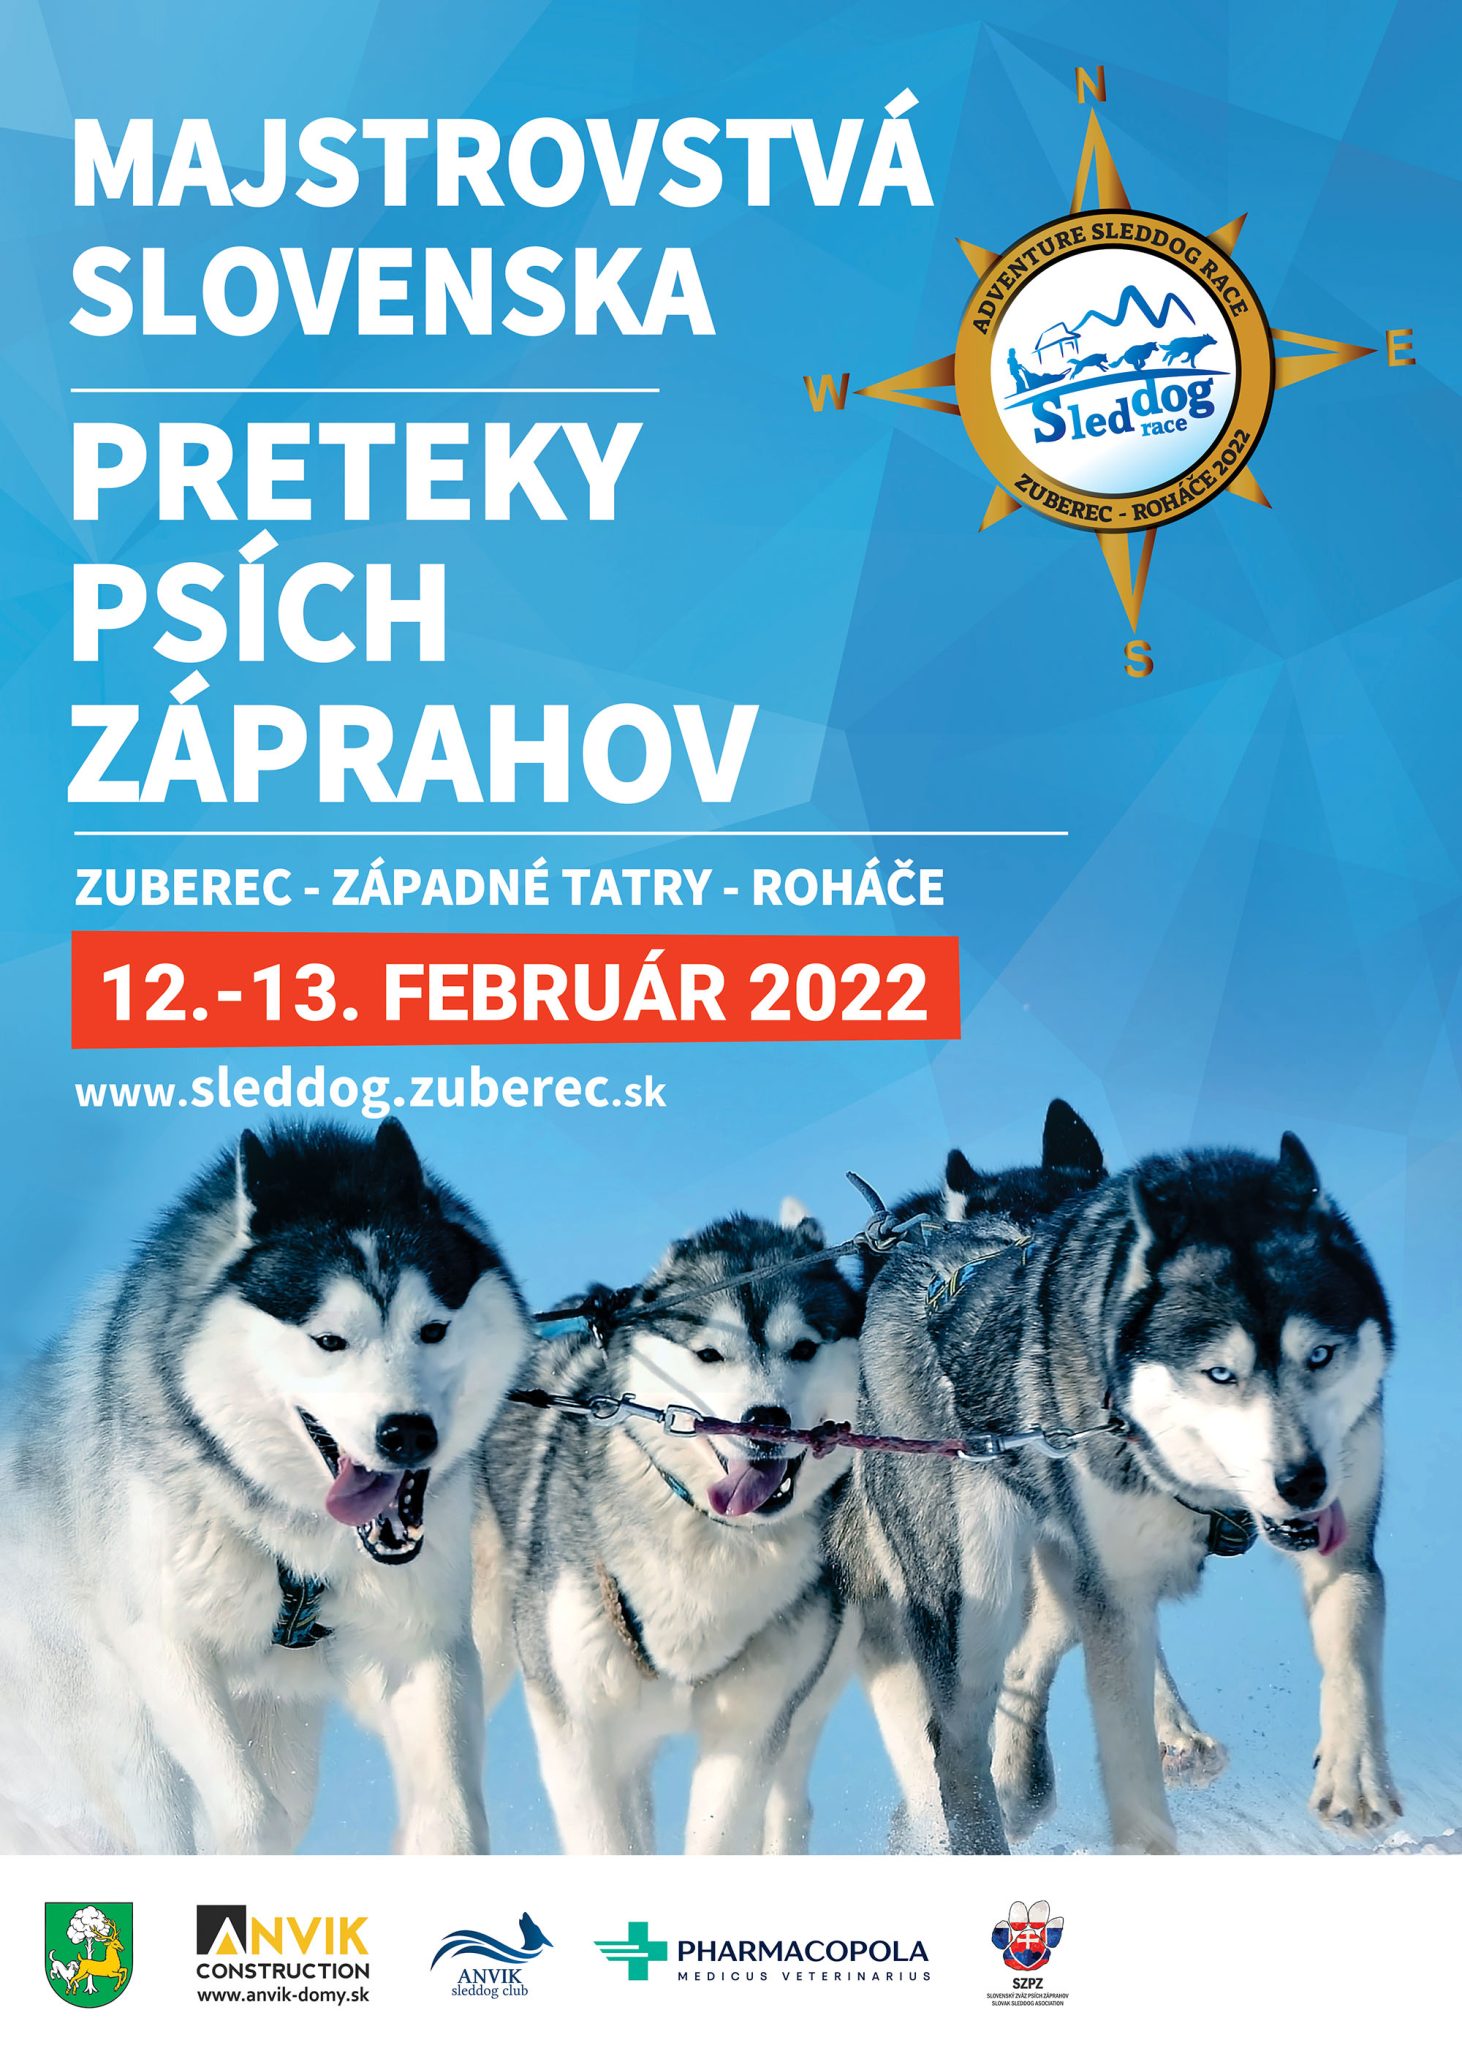 Preteky psch zprahov 2022 Zuberec - Majstrovstv Slovenska